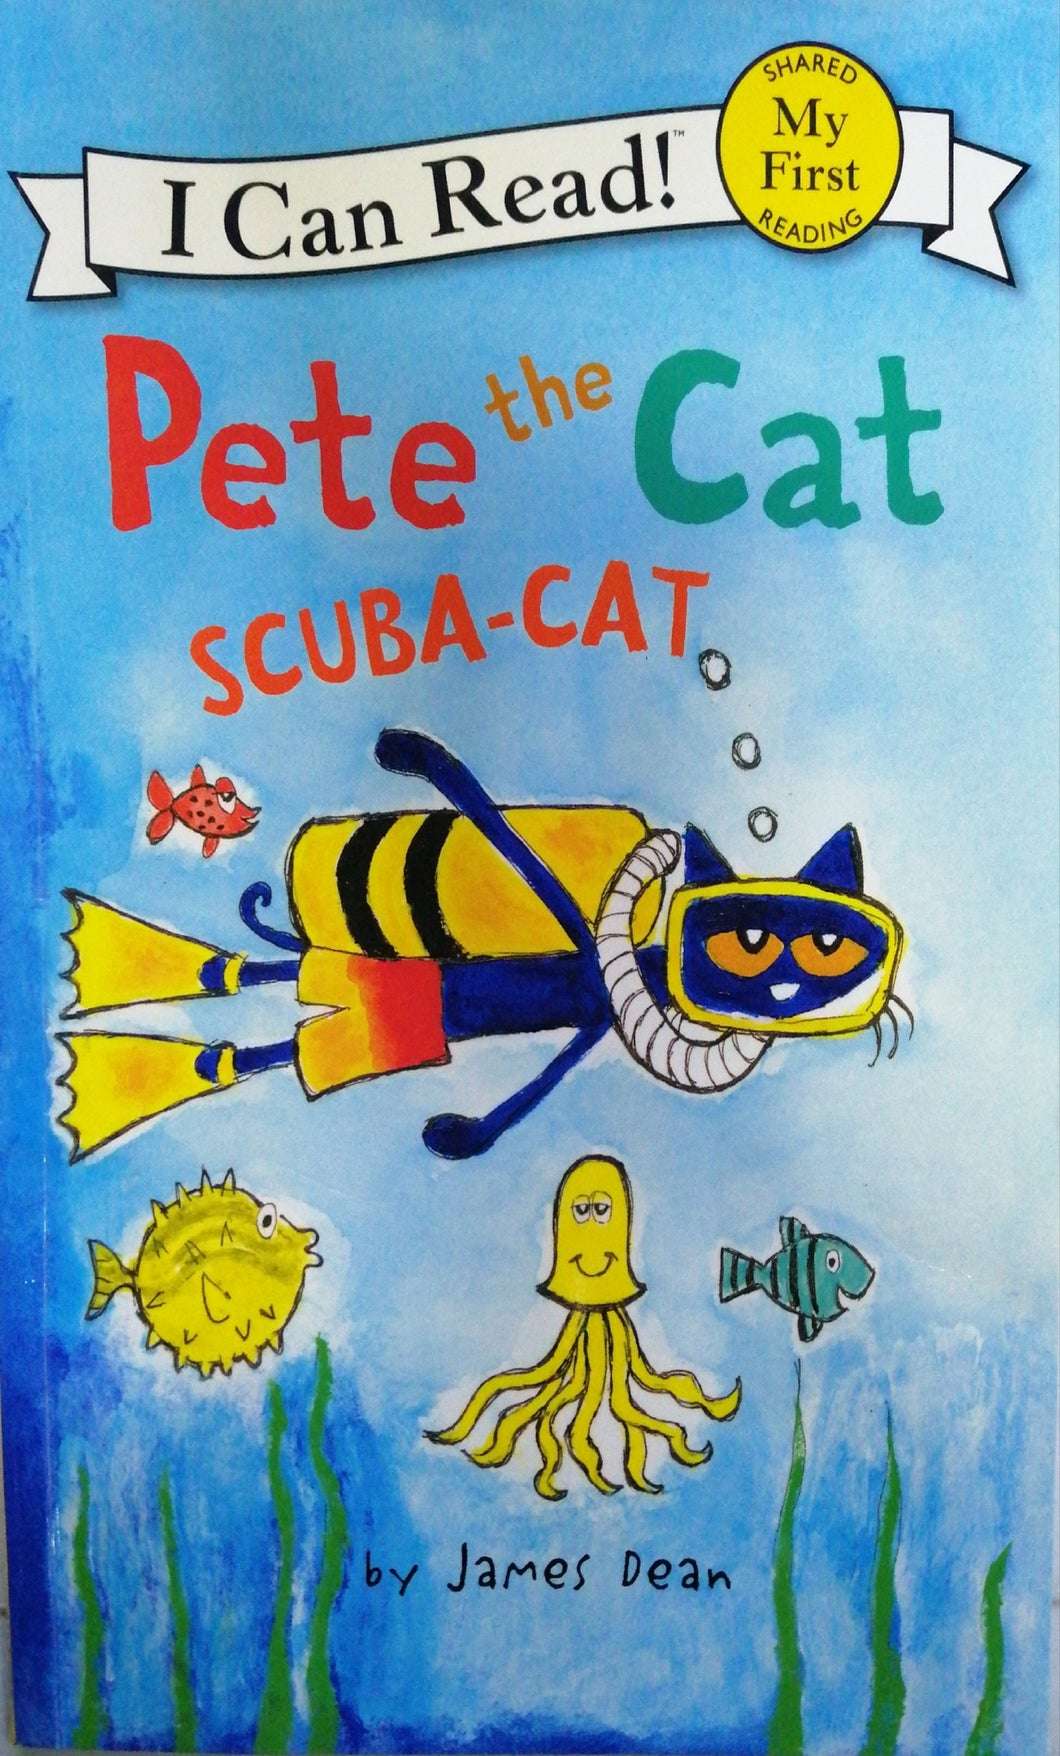 Pete the Cat scuba